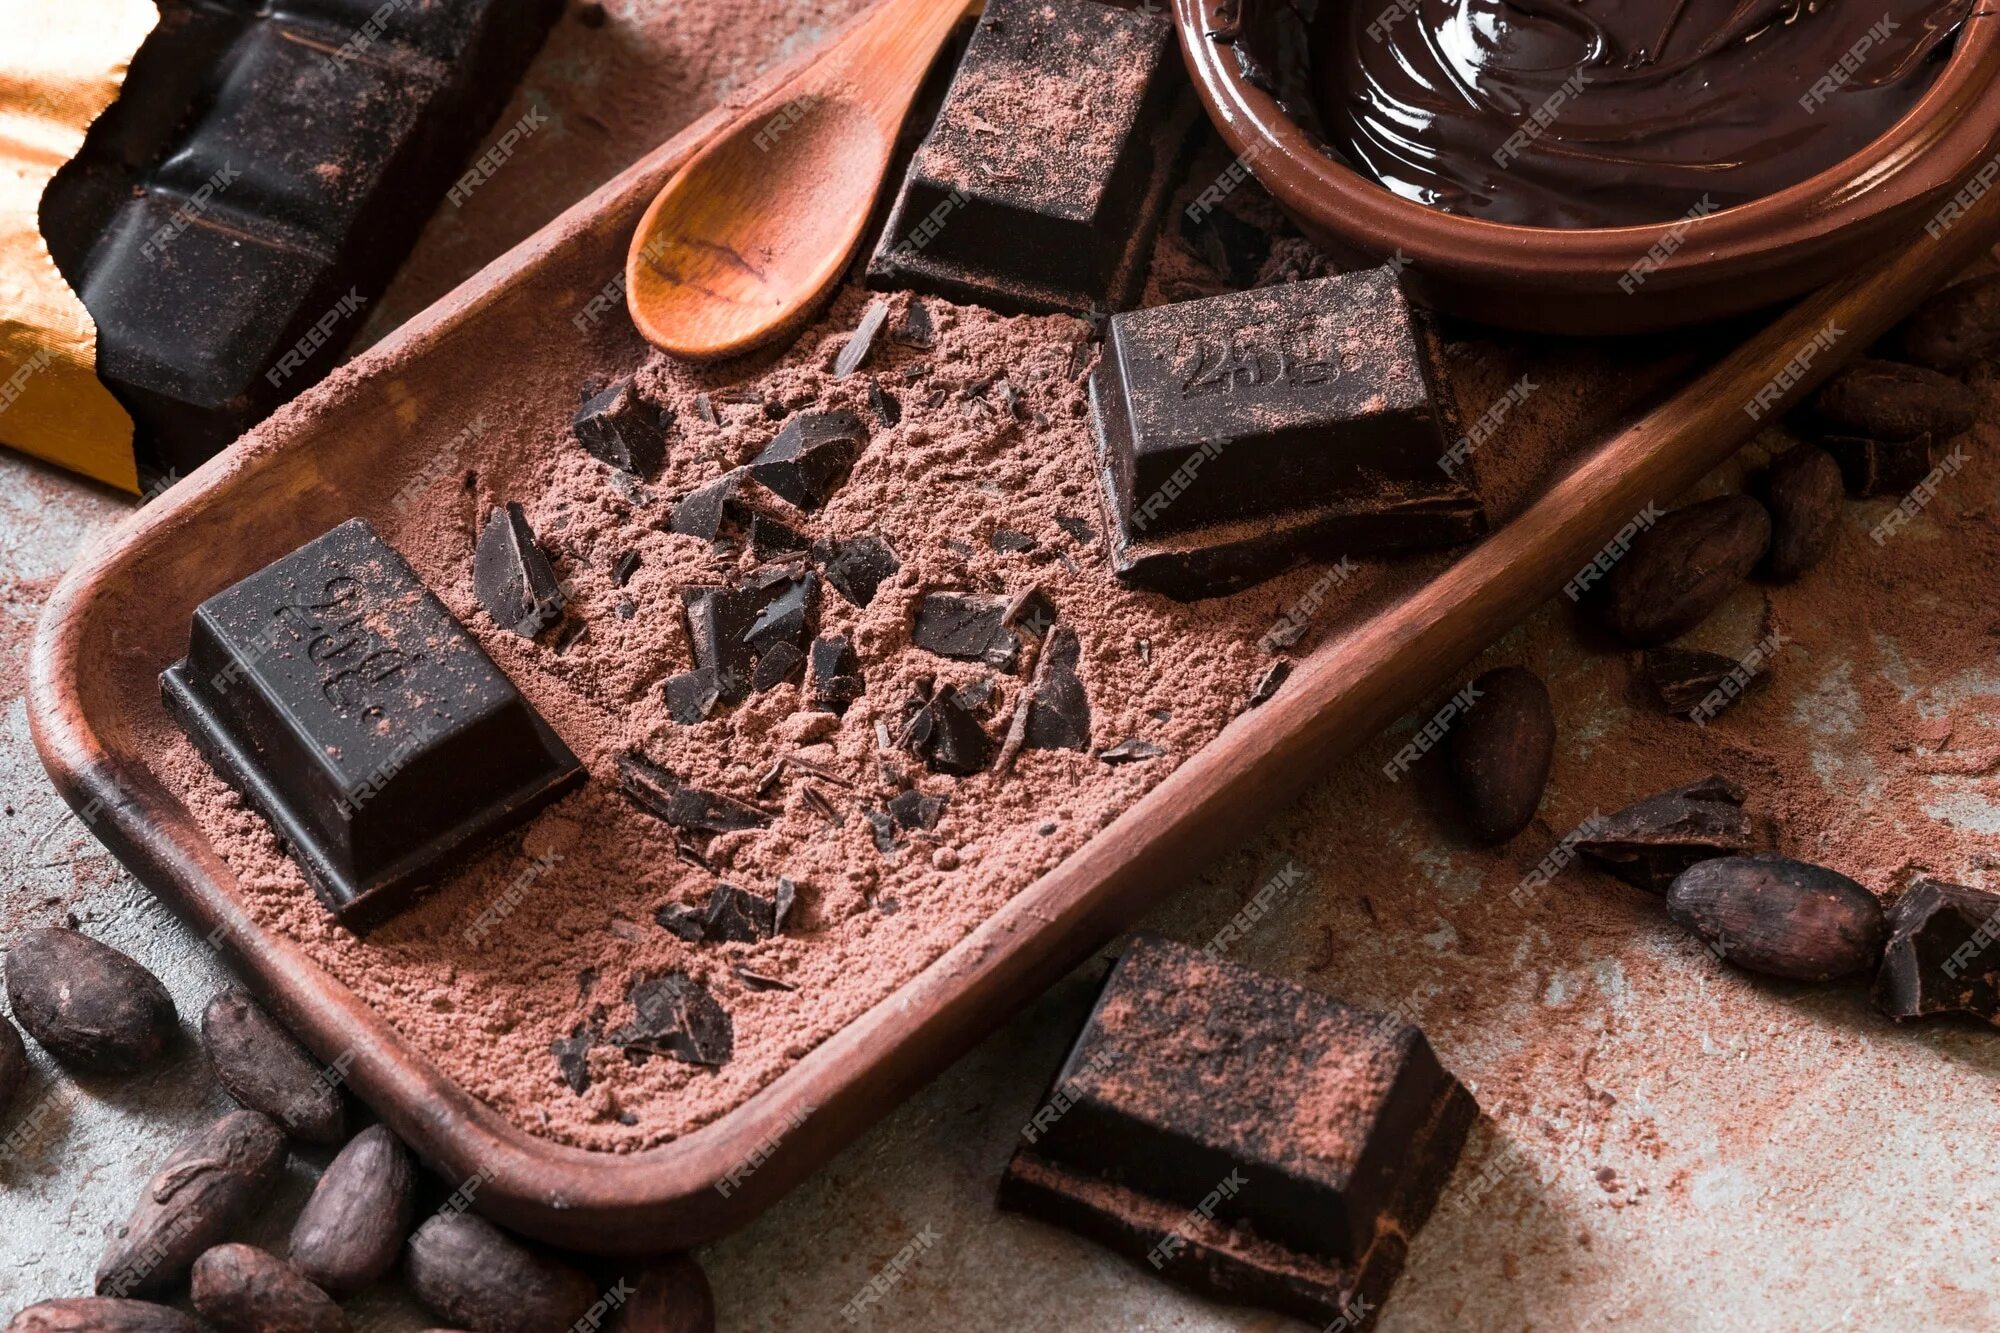 Что будет если съесть плитку шоколада. Шоколад Горький. Натуральный темный шоколад. Натуральный черный шоколад. Натуральный Горький шоколад.